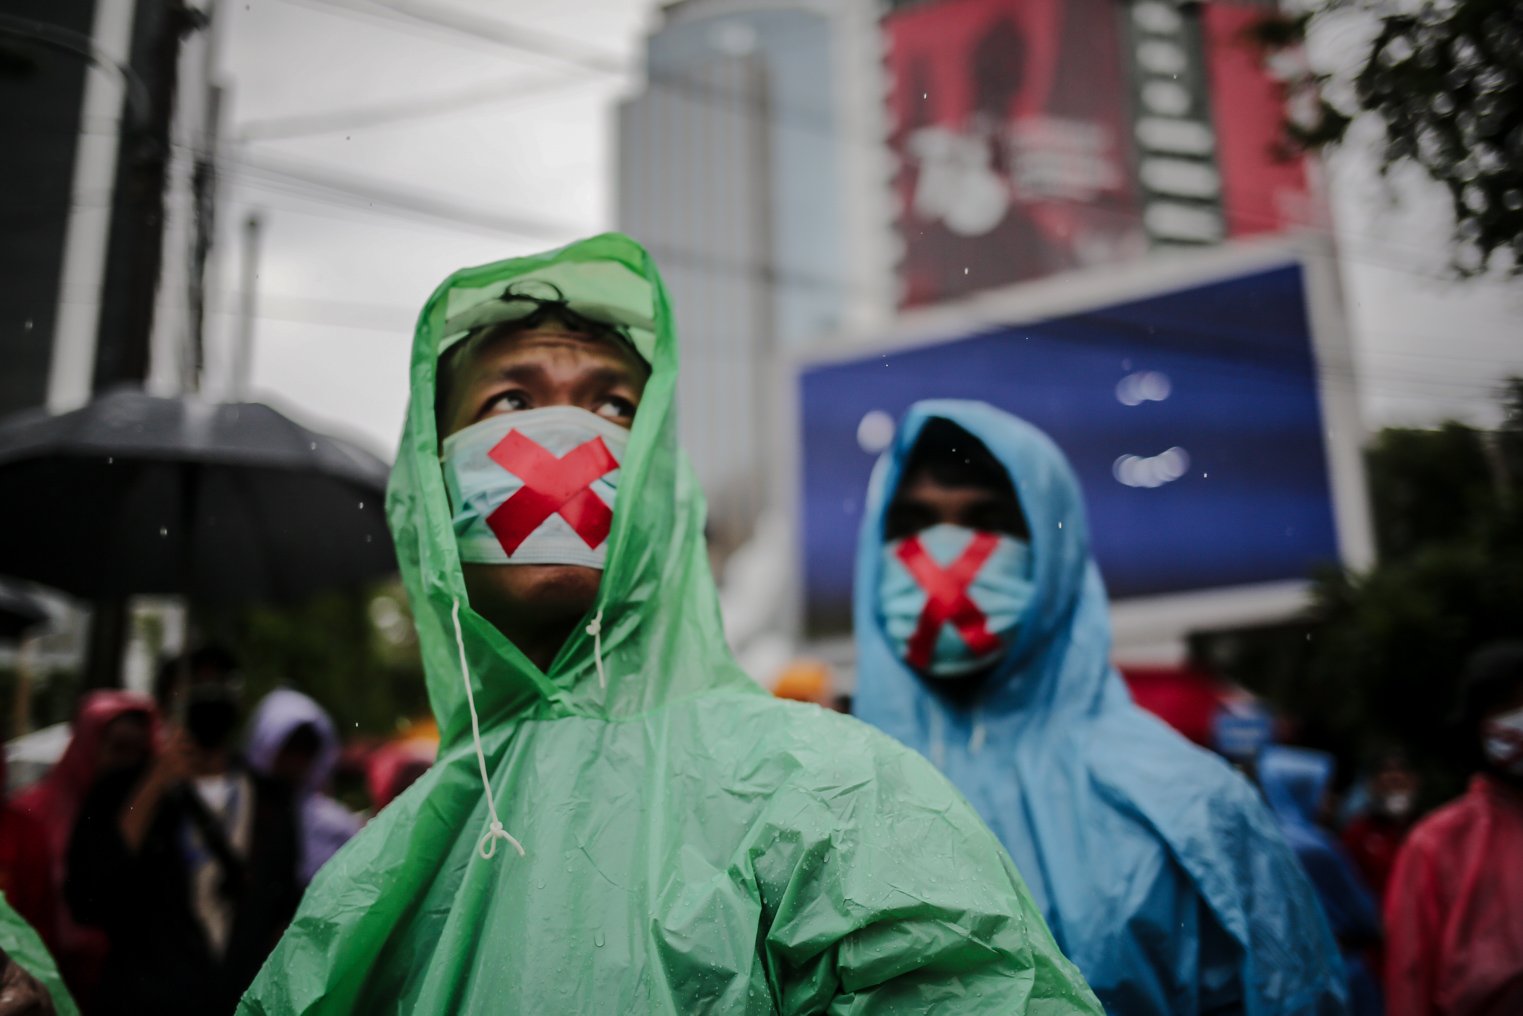 Masa aksi mengenakan masker diberi tanda X antusias menyaksikan orasi saat melakukan unjuk rasa di Wilayah Patung Kuda, Jakarta, Kamis (28/10/2021). Dalam aksinya demonstran yang tergabung dari mahasiswa dan buruh meyuarakan 13 tuntutan diantaranya Cabut Omnibus Law dan seluruh PP turunannya.